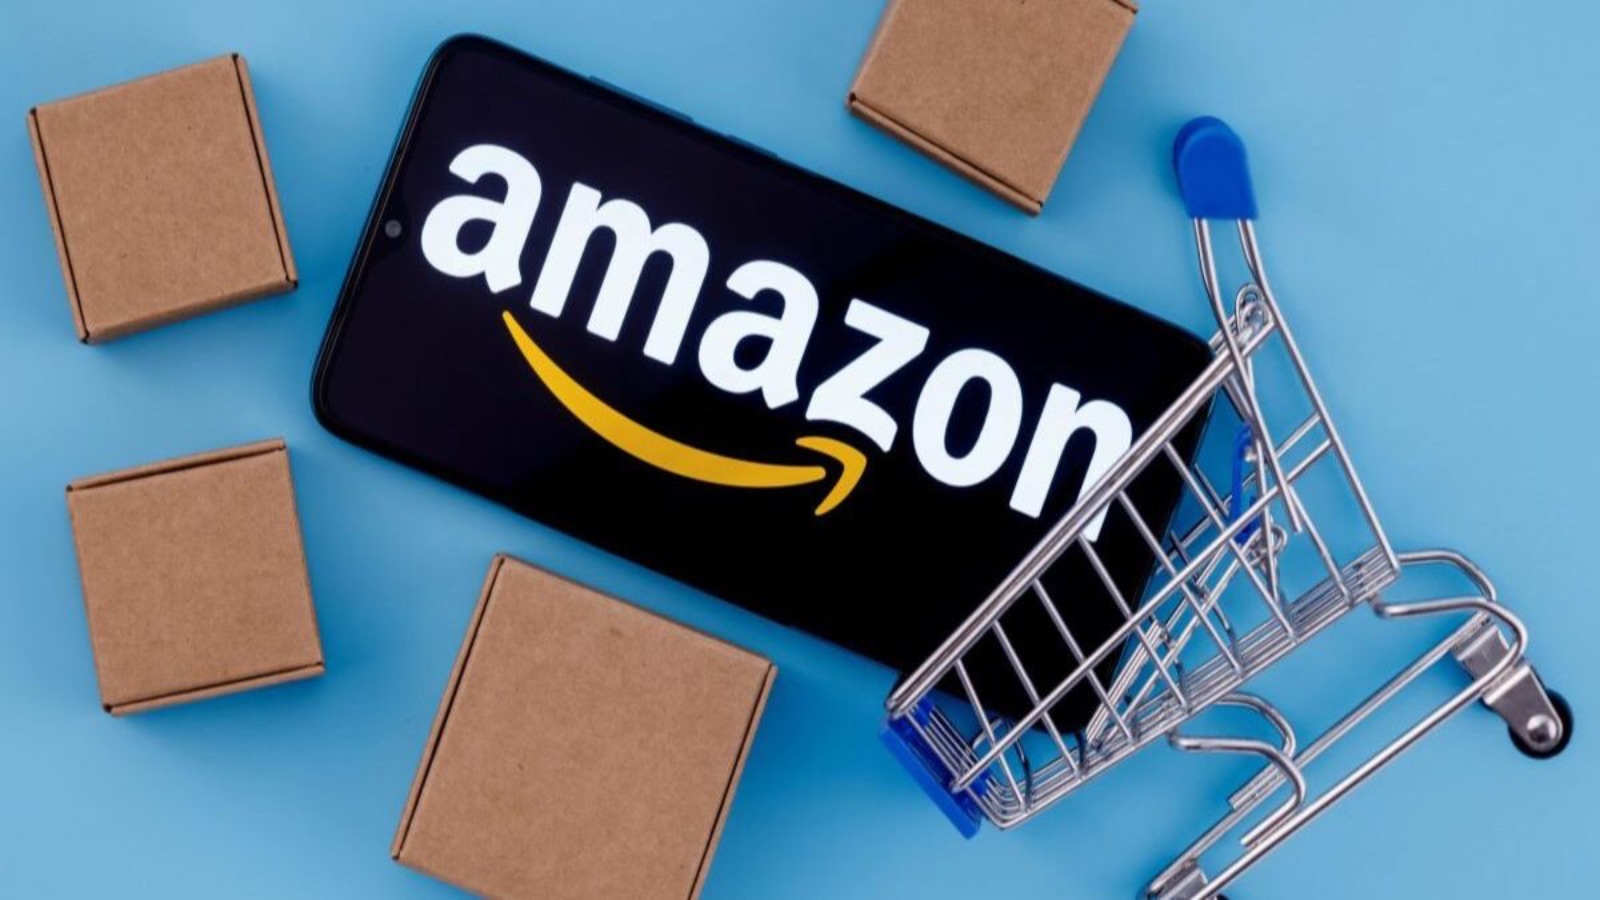 Amazon distrugge EURONICS con offerte all'80% di sconto